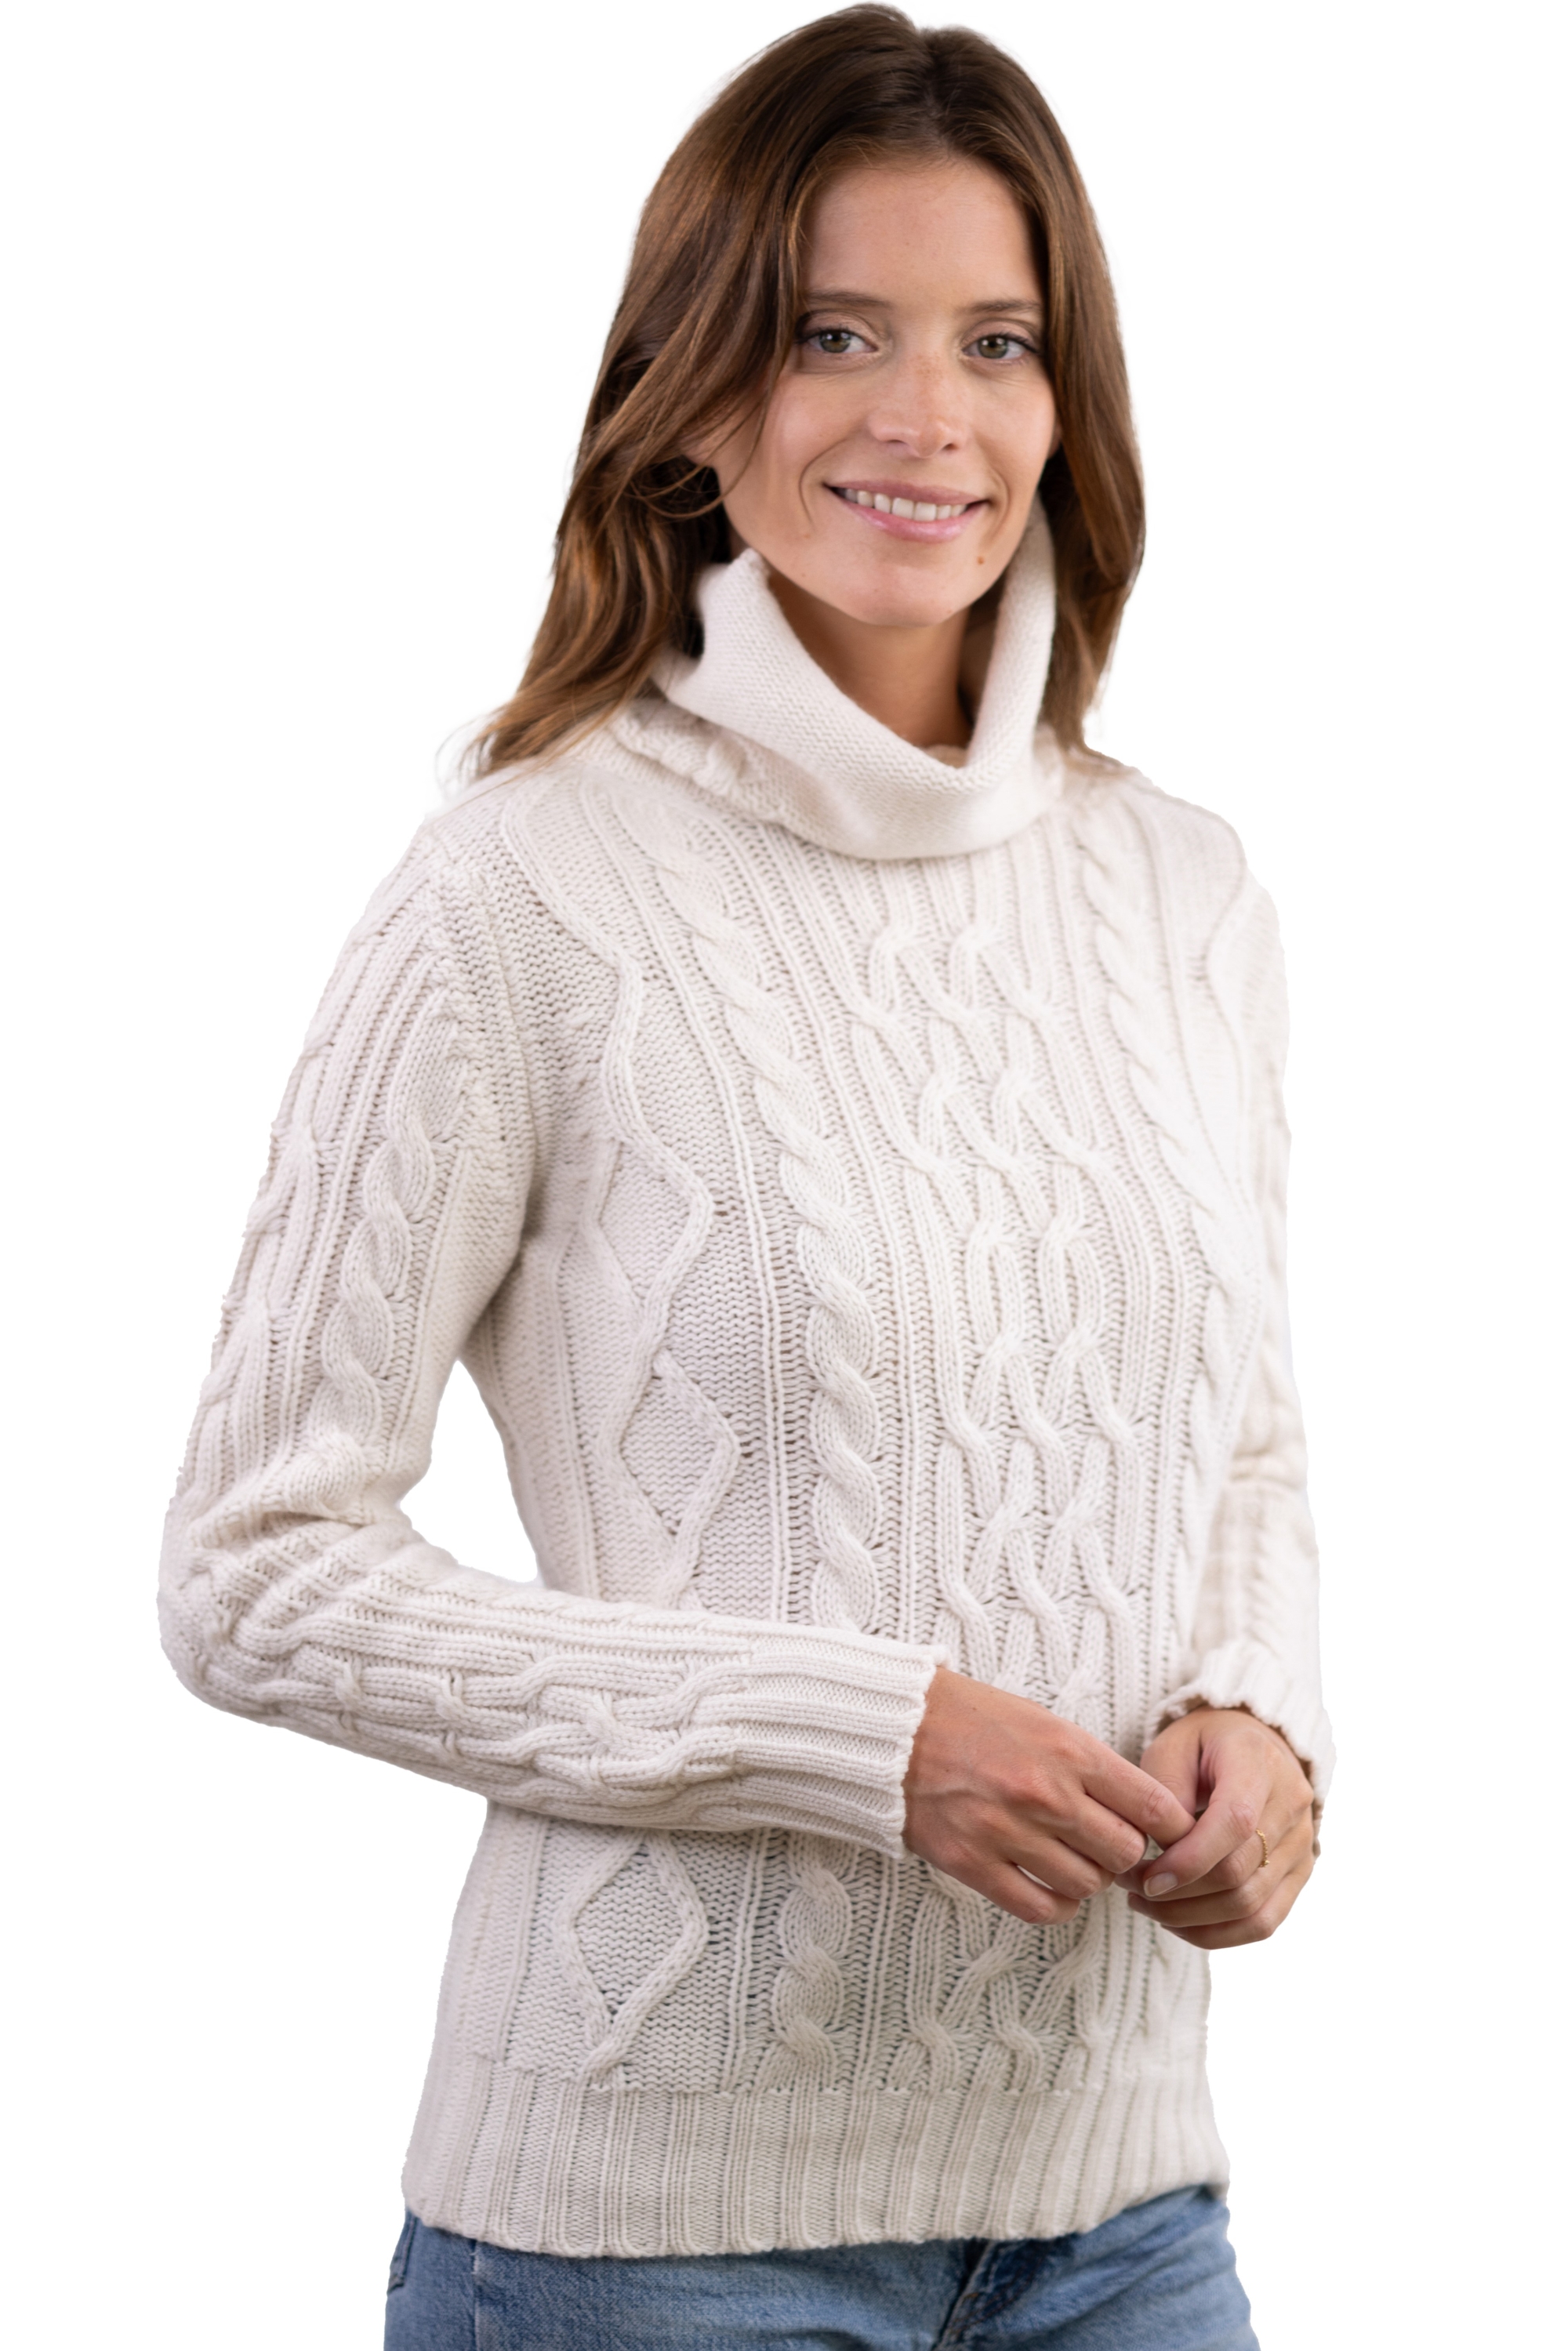 Cashmere cashmere donna maglioni in filato grosso wynona bianco naturale 3xl